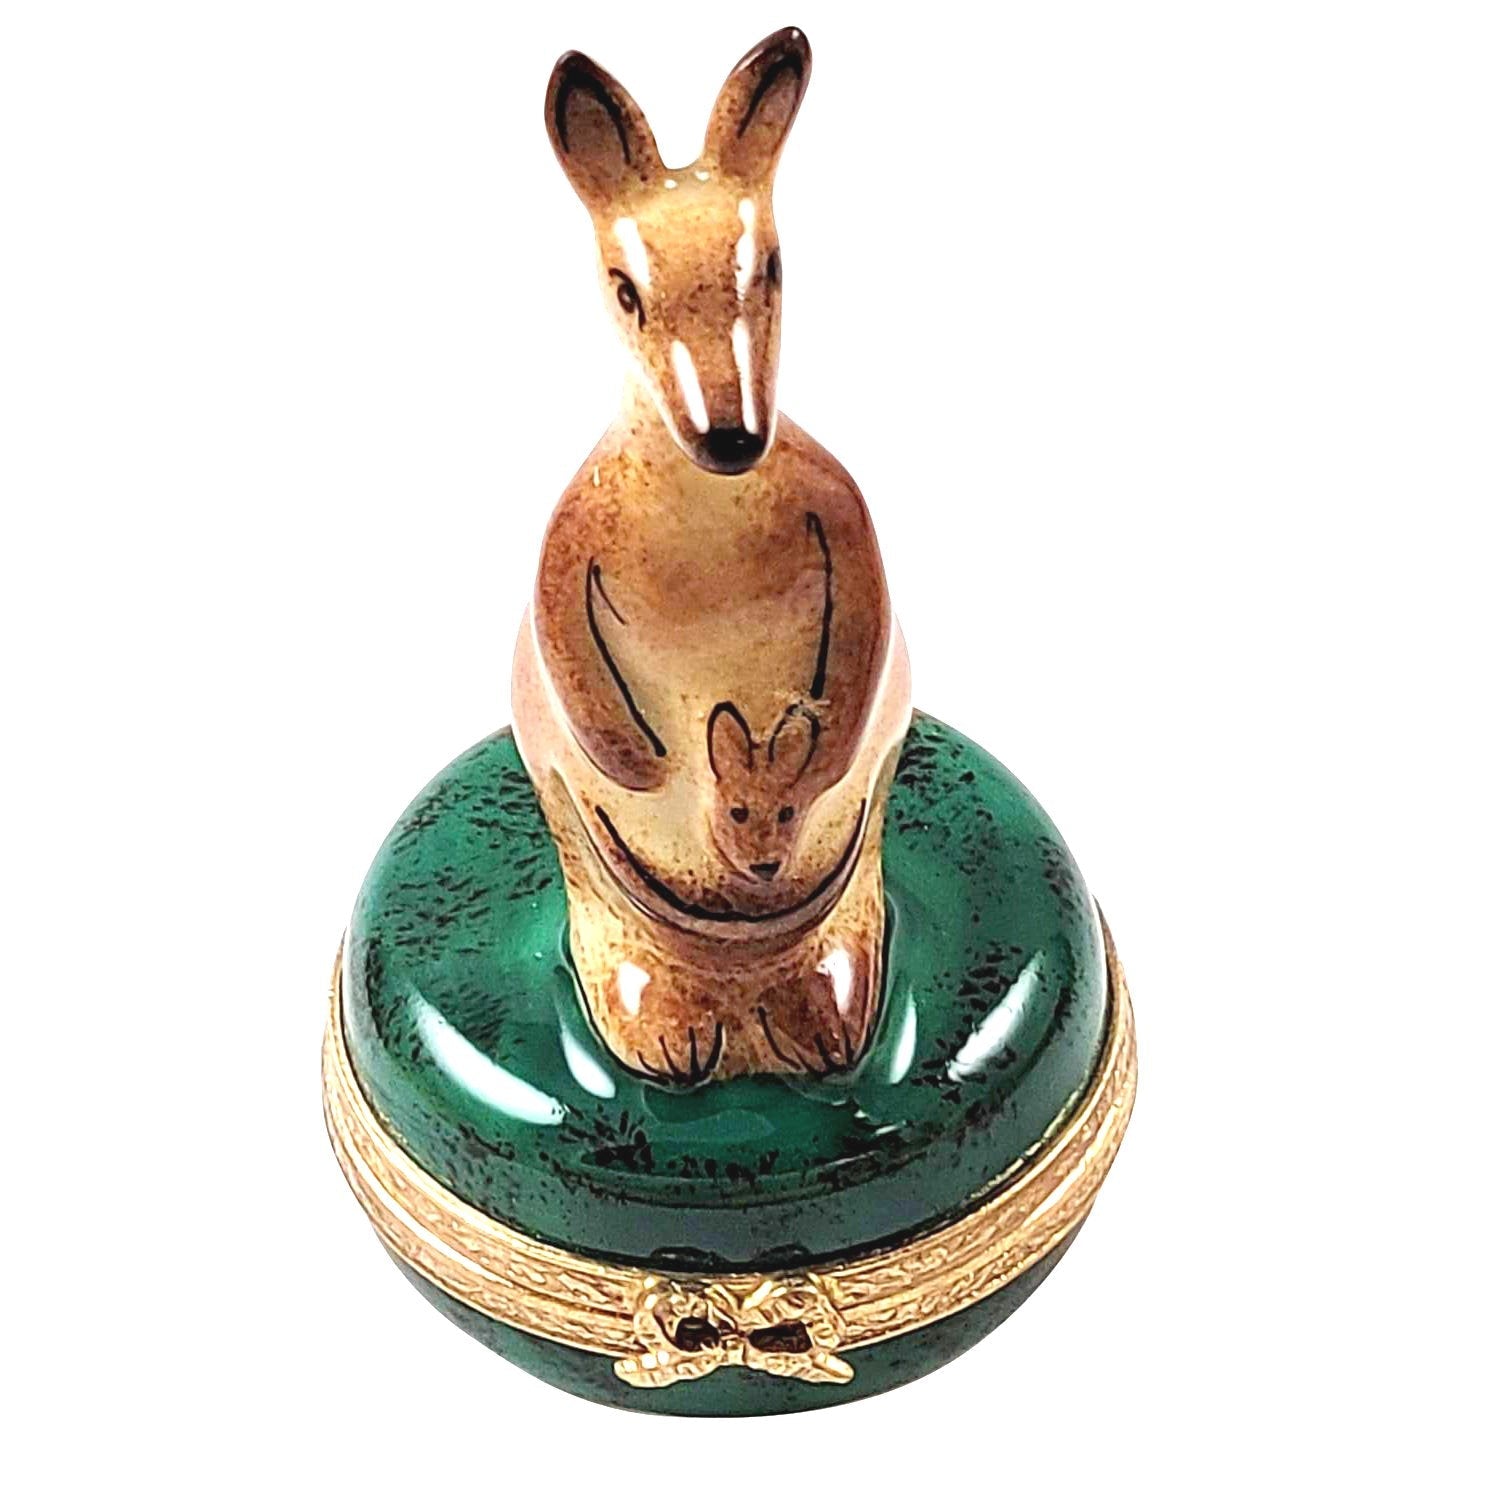 Kangaroo Limoges Box Porcelain Figurine Australia